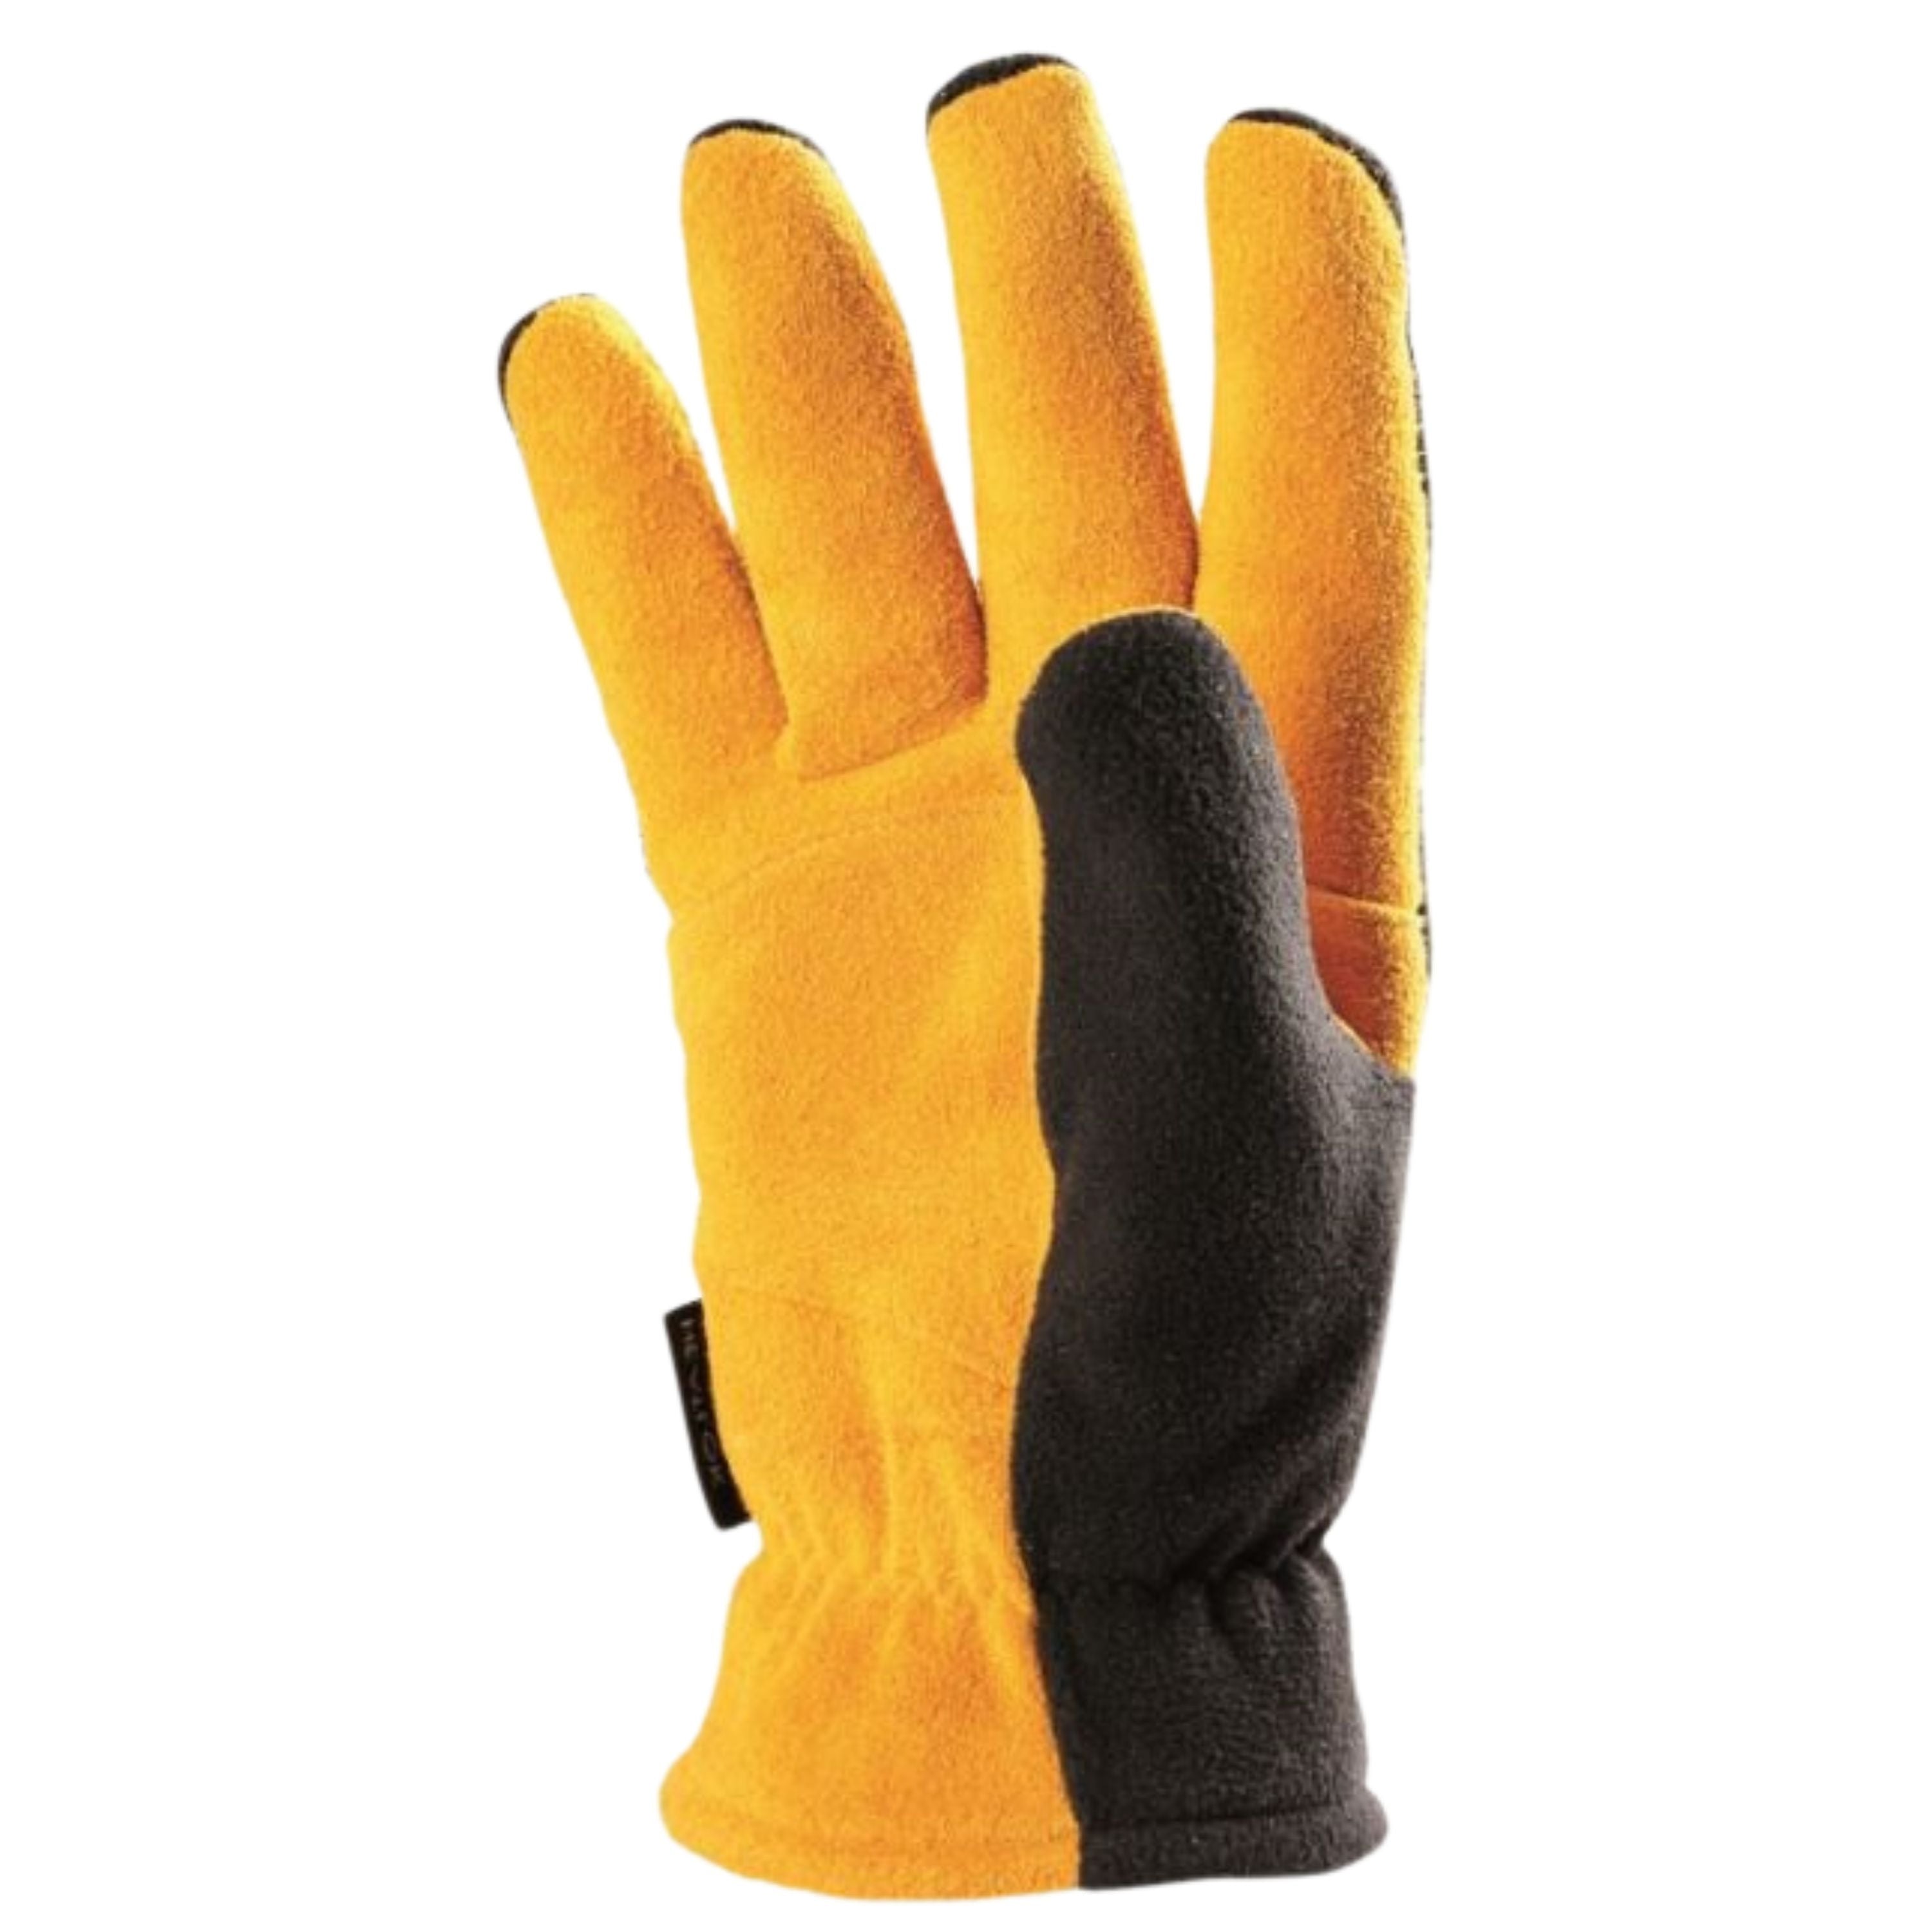 Fall/Winter gloves - Men's